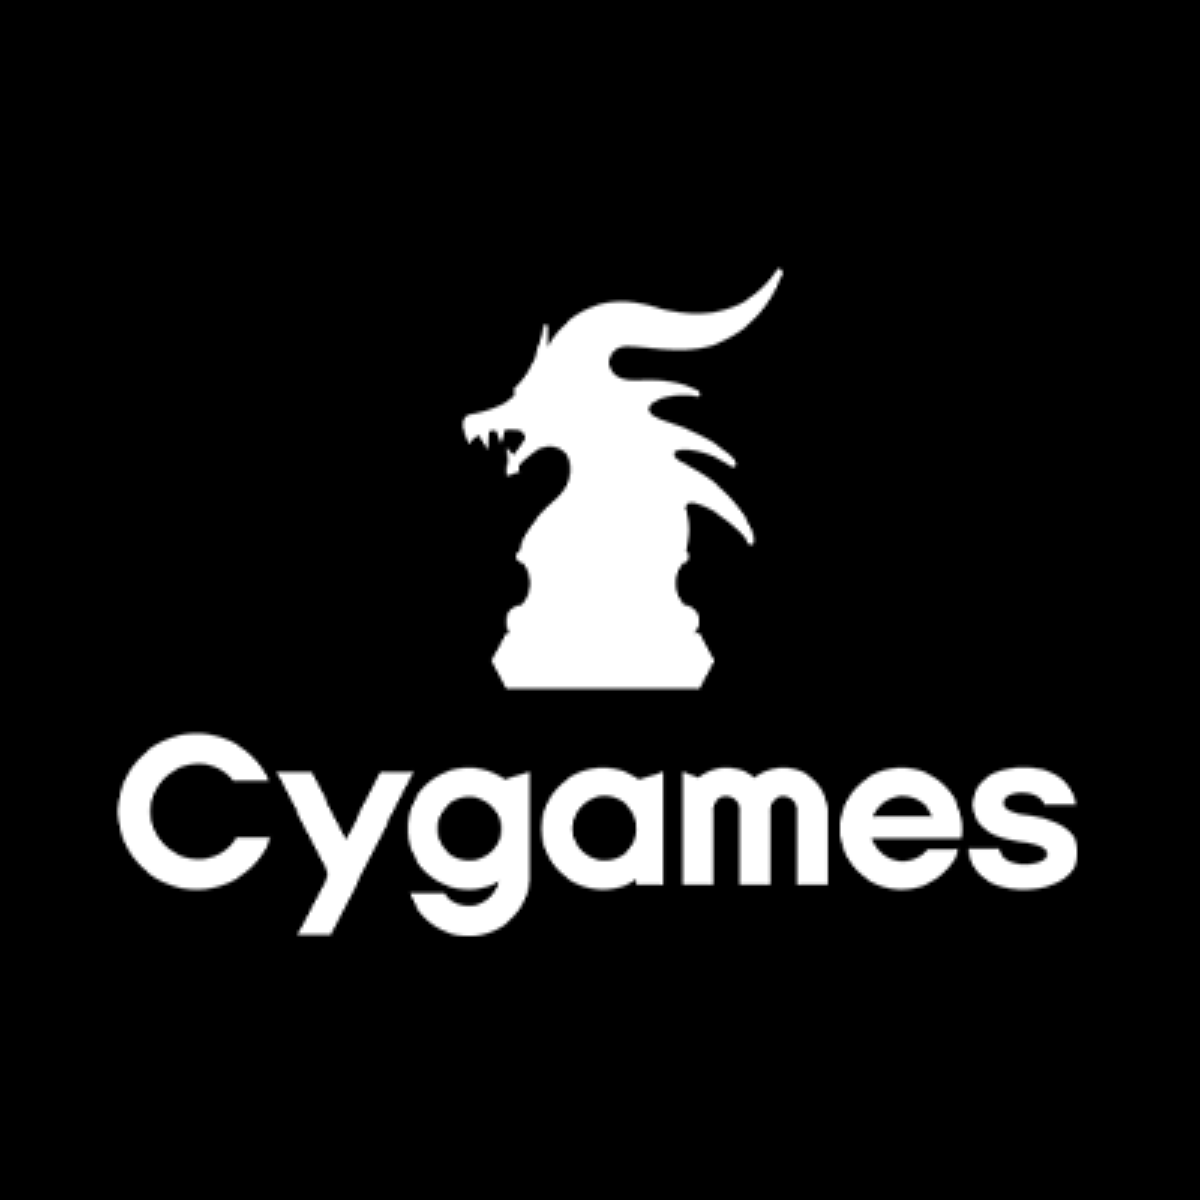 Cygamesのゲームが軒並みサーバーダウン。 けど一部のゲームは問題なし? みんなの反応まとめ